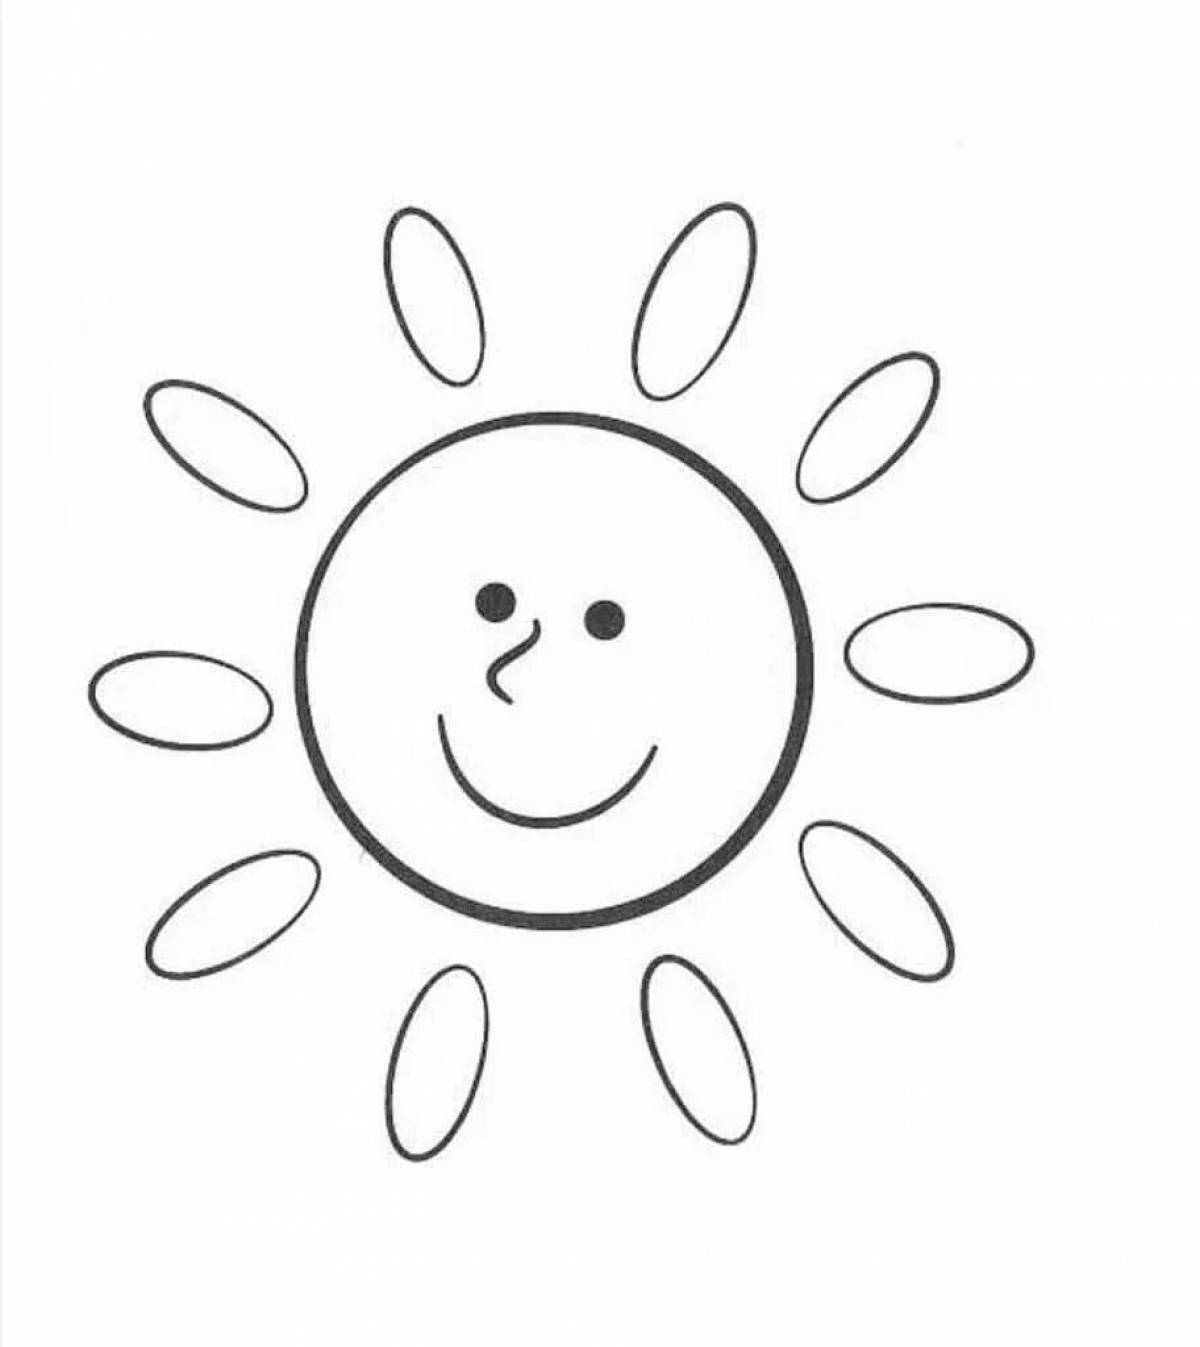 Светящаяся раскраска солнце для детей 2-3 лет